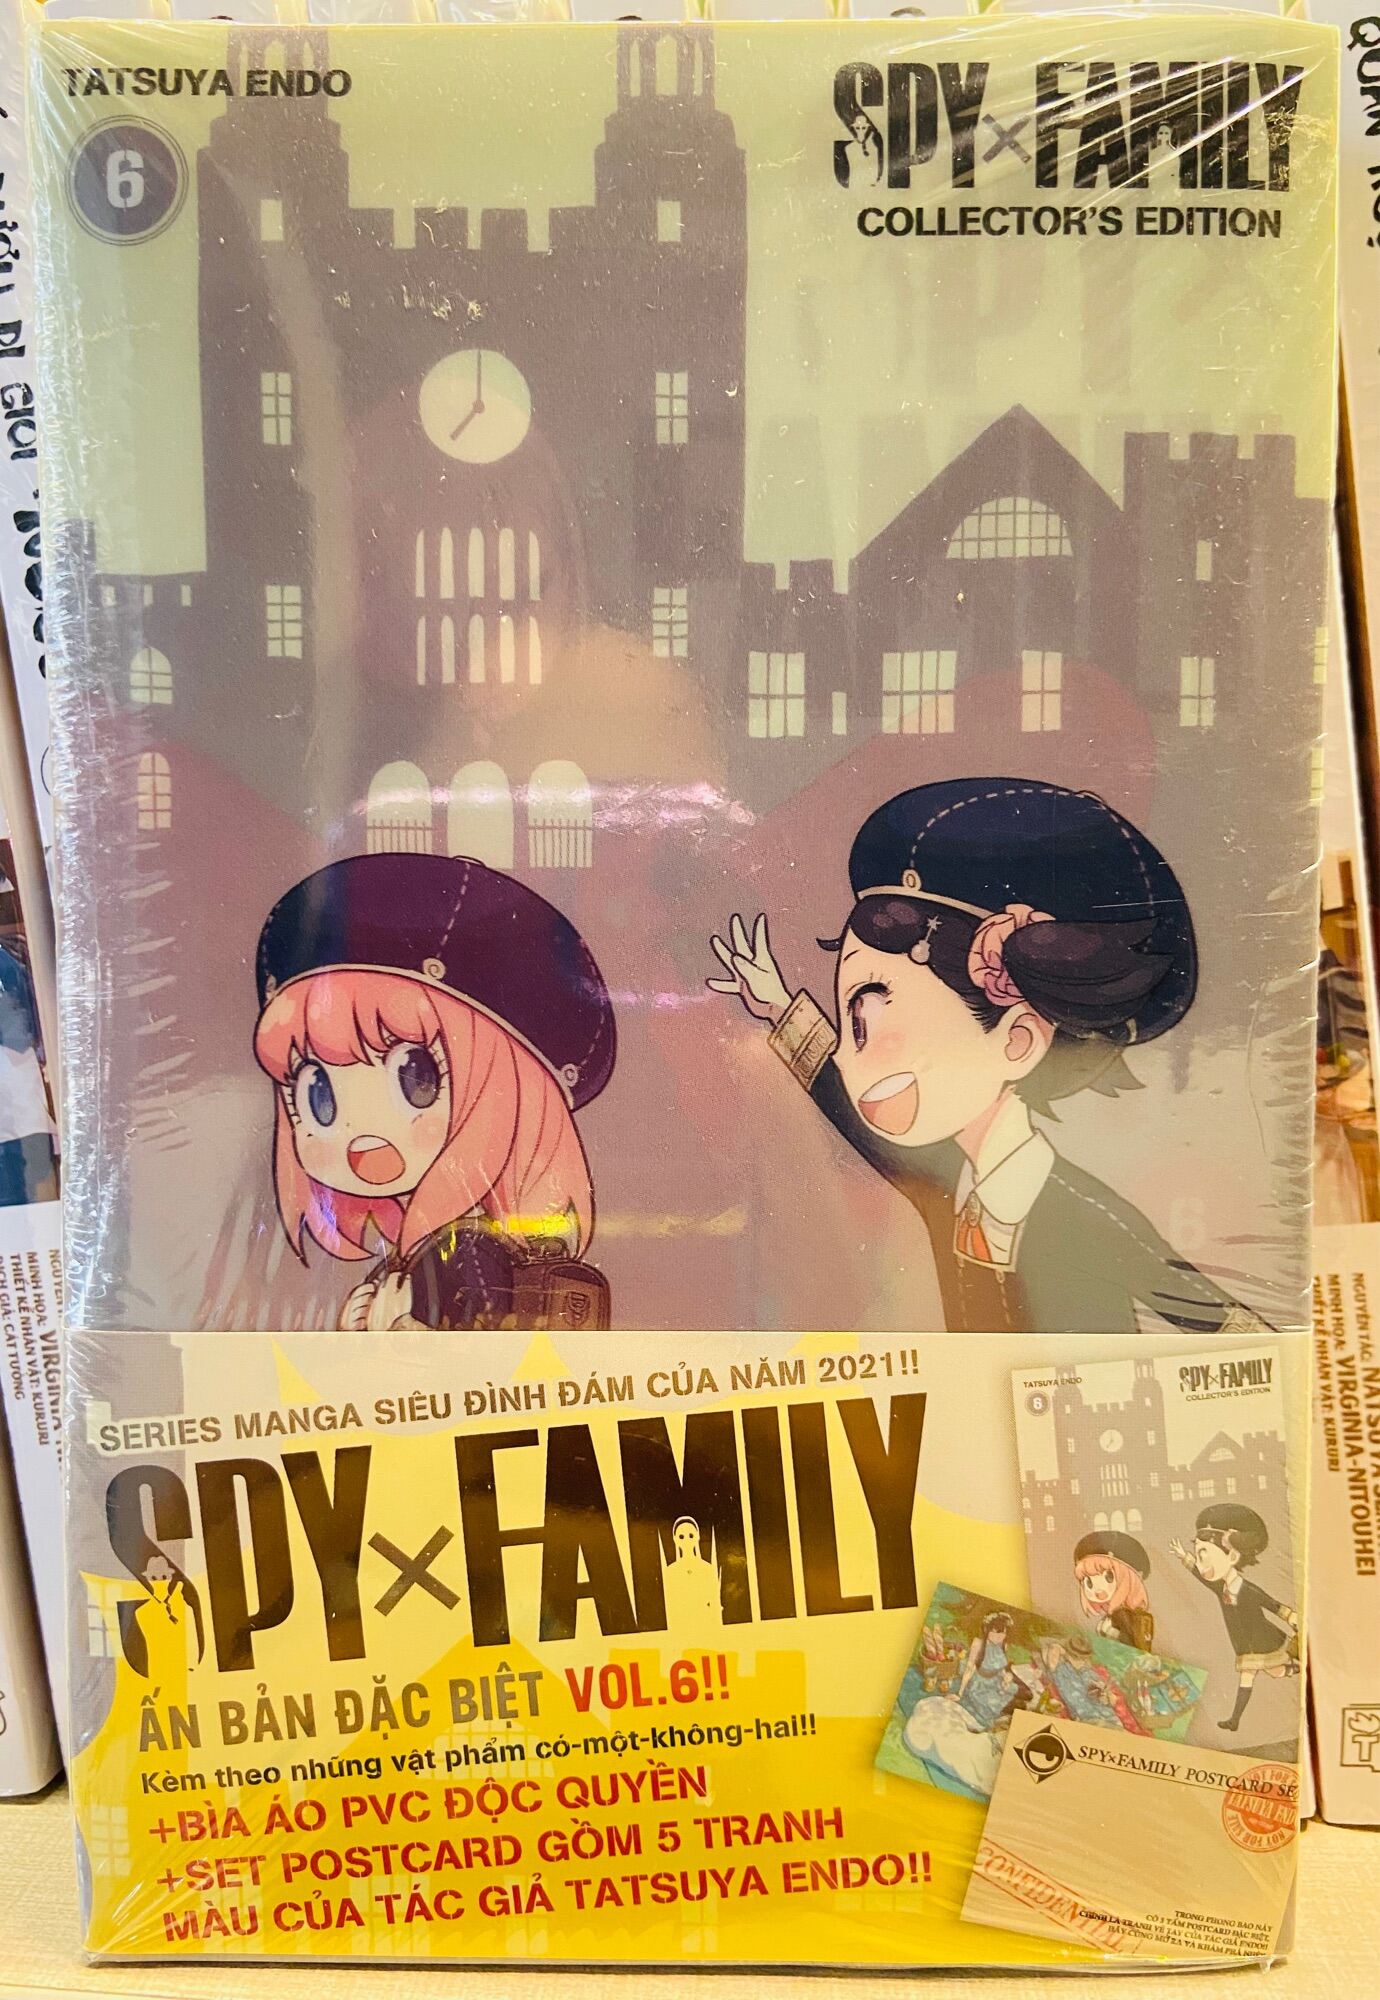 Spy x Family Tập 6 Bản Đặc Biệt + Tặng Spy 7 Bản thường/Tem Spy/Sticker Spy